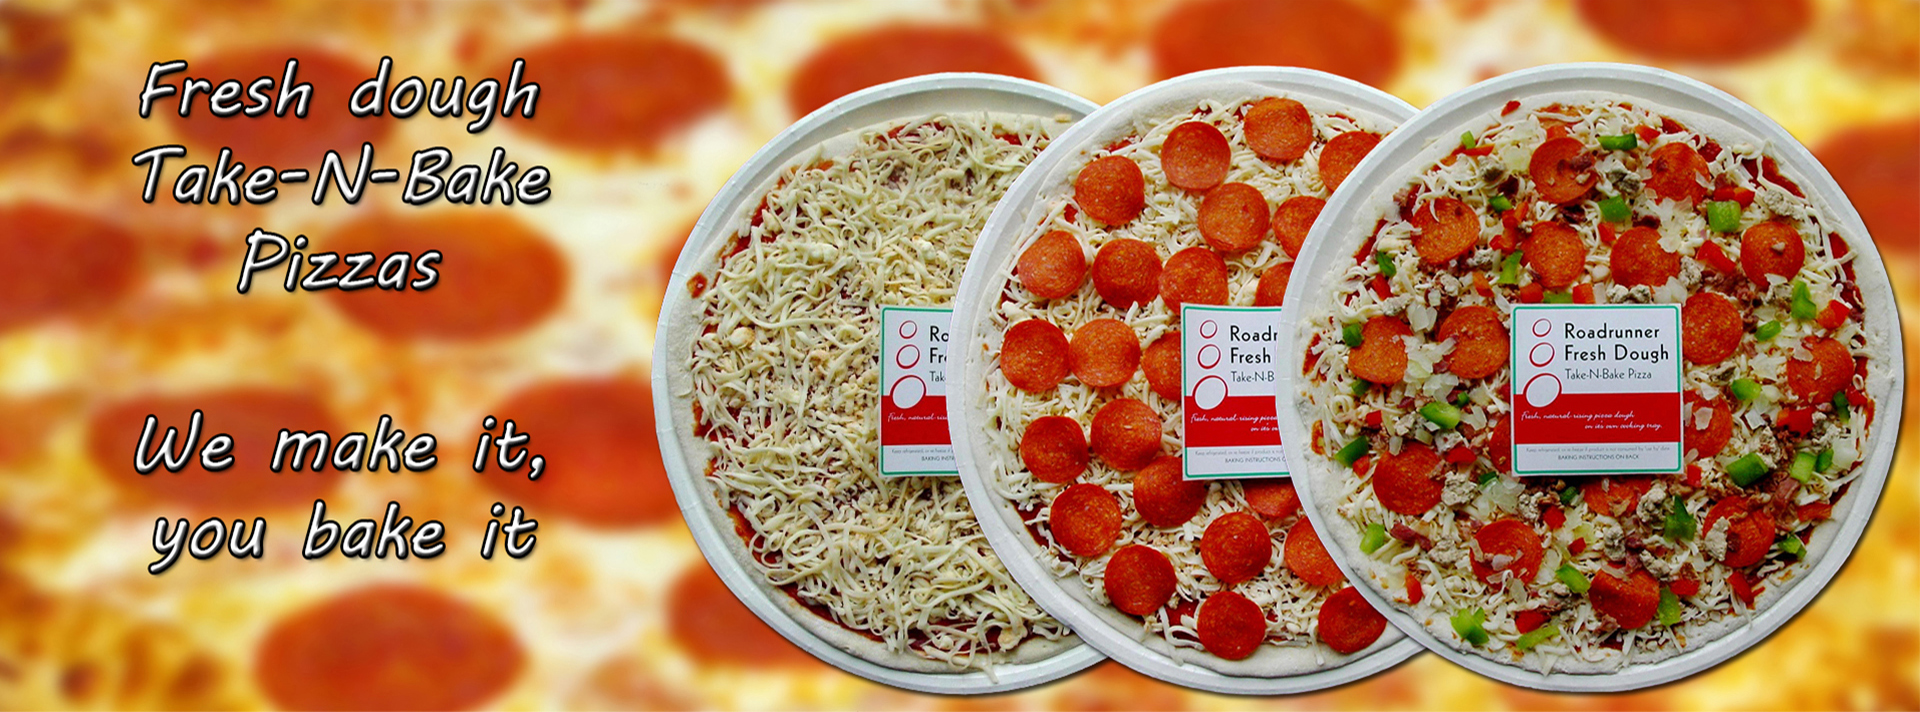 Fresh dough take-n-bake pizzas. We make it, you bake it.